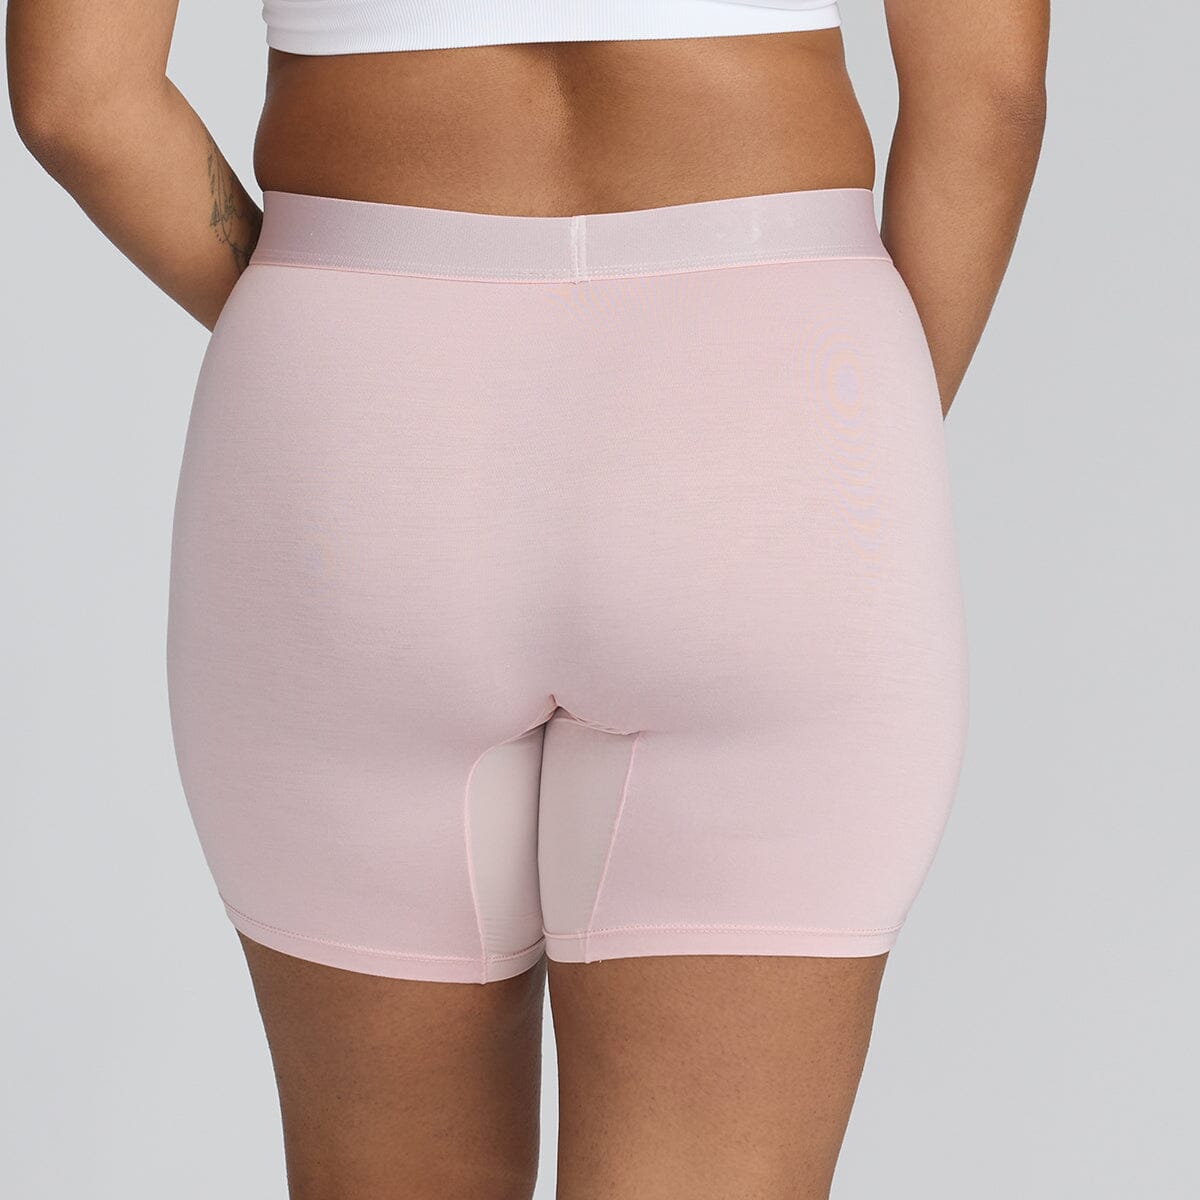 Women's Body Shorts - Blush - Bamboo Underwear